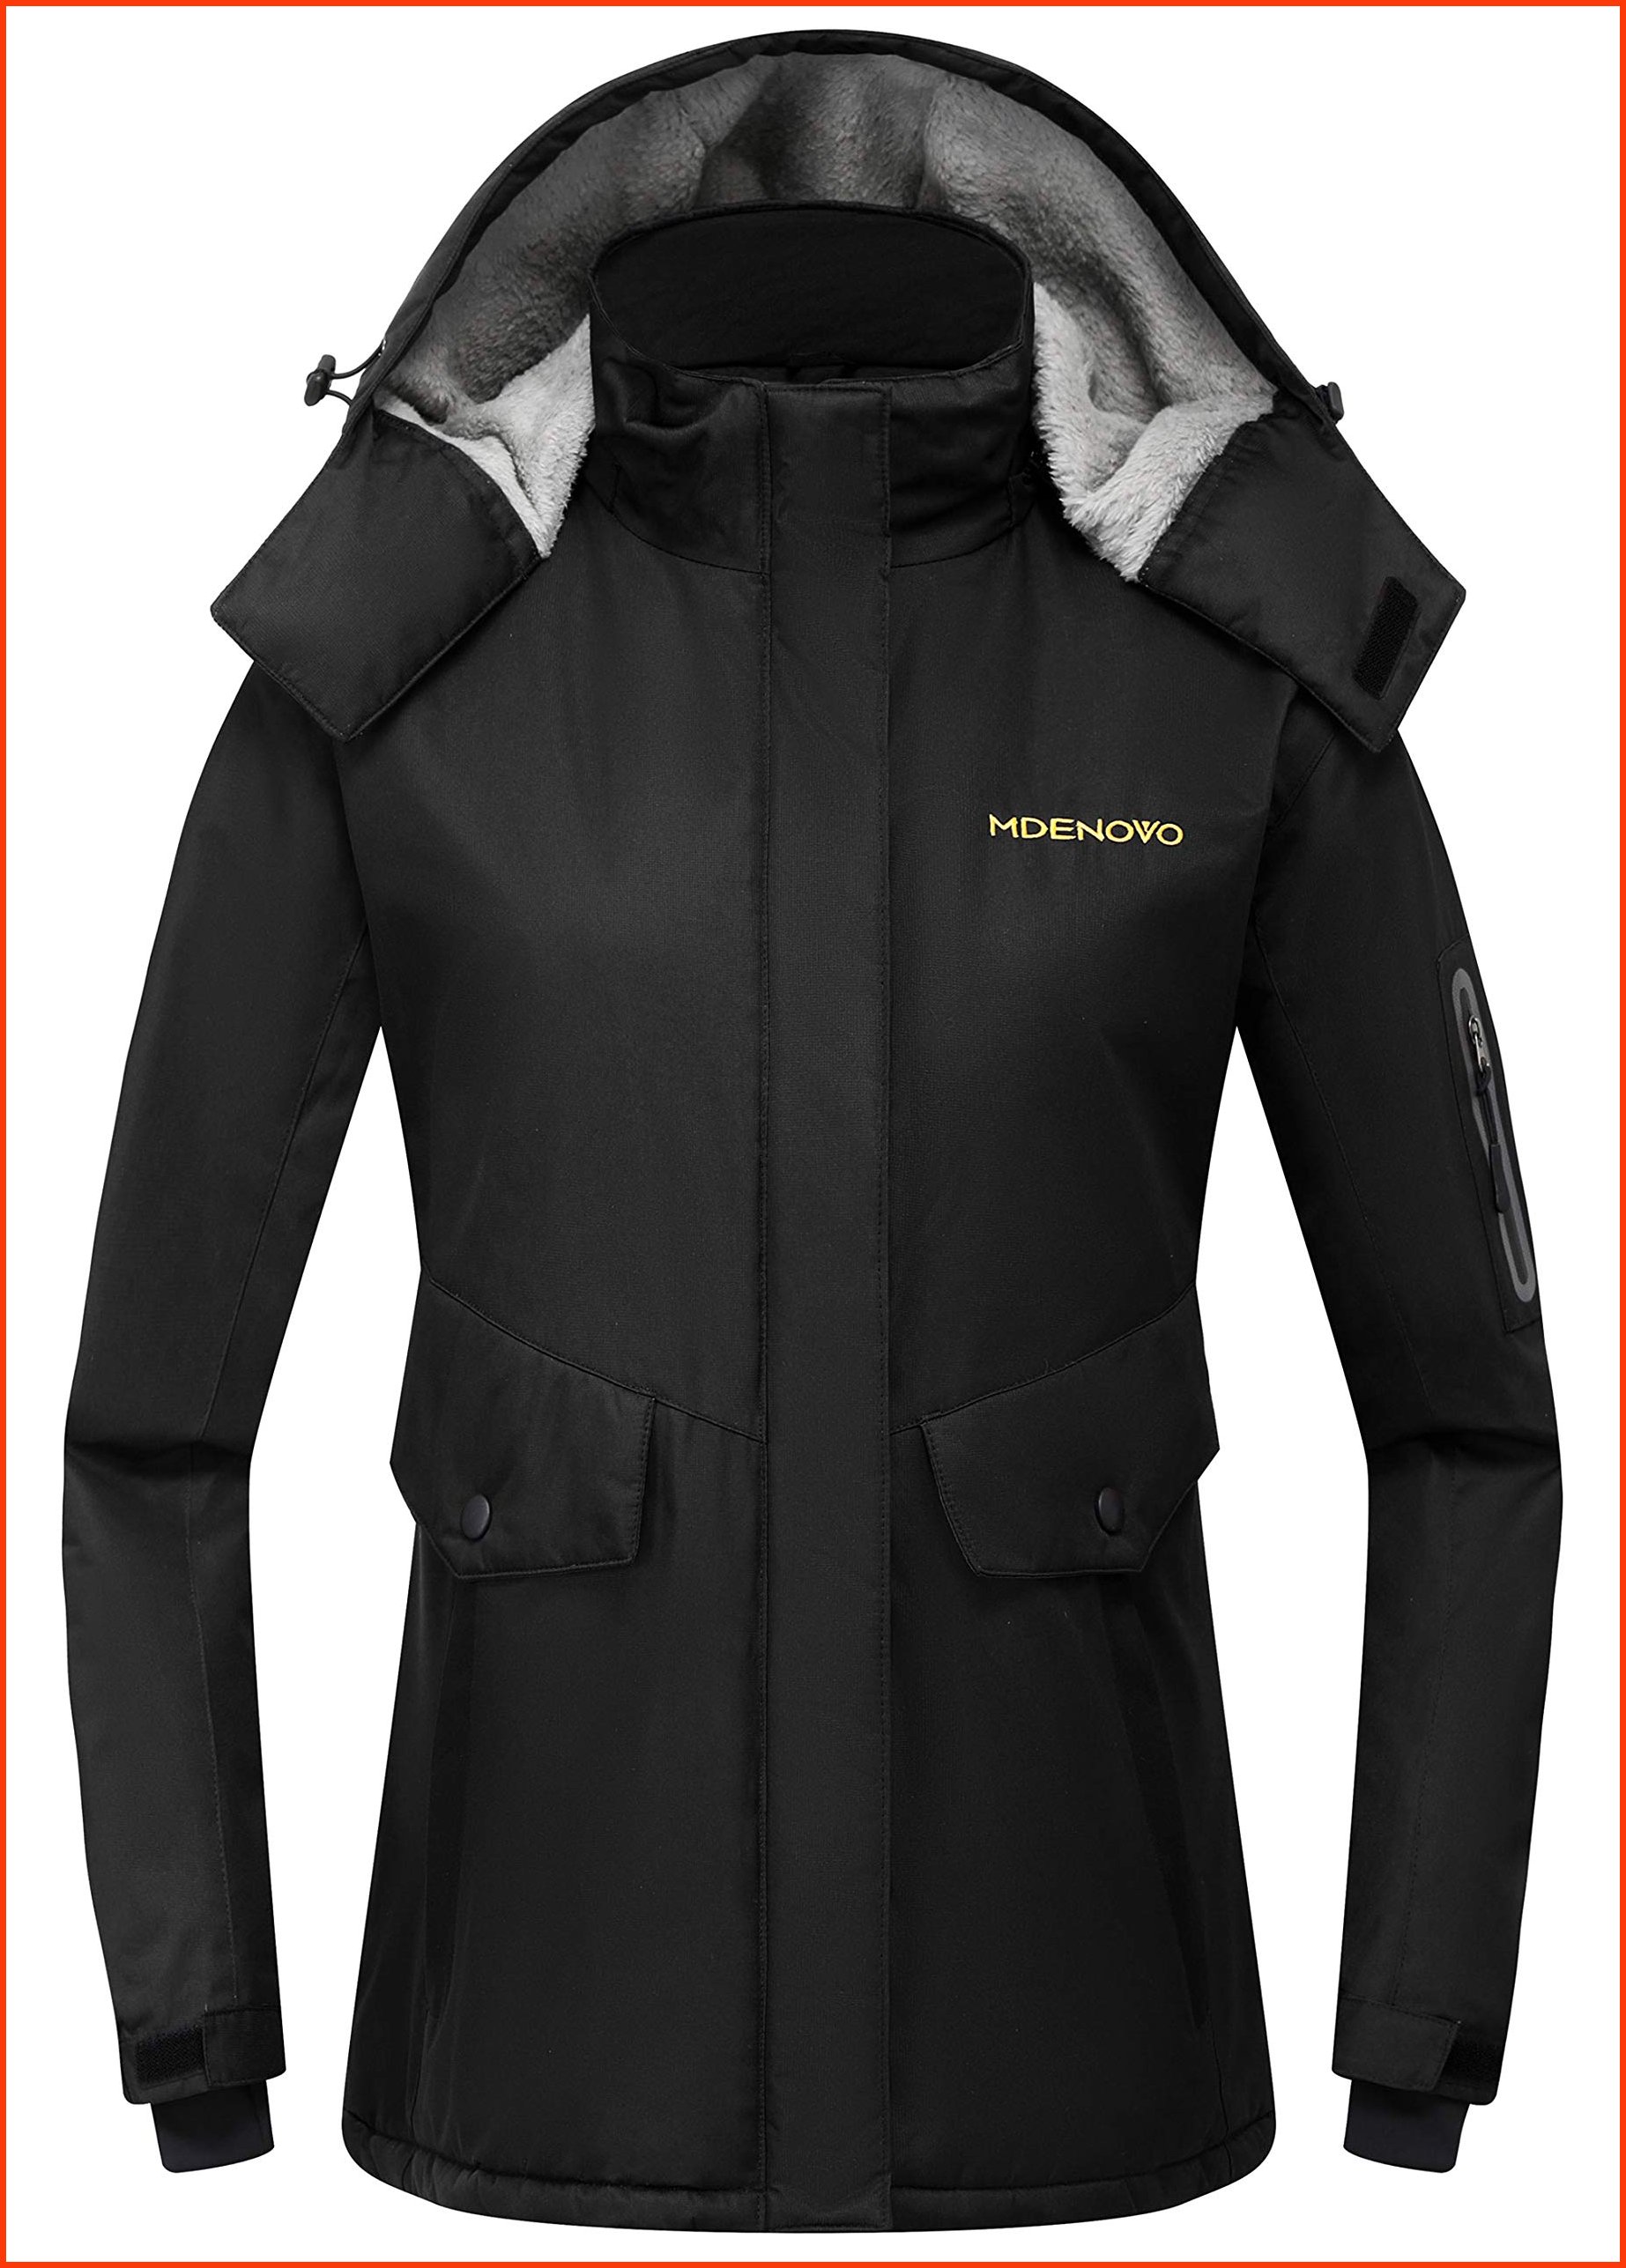 並行輸入品MDENOVO Womens Mountain Ski Jacket Waterproof Fleece Insulated Snow Winter Rain CoatsBlack X-Large